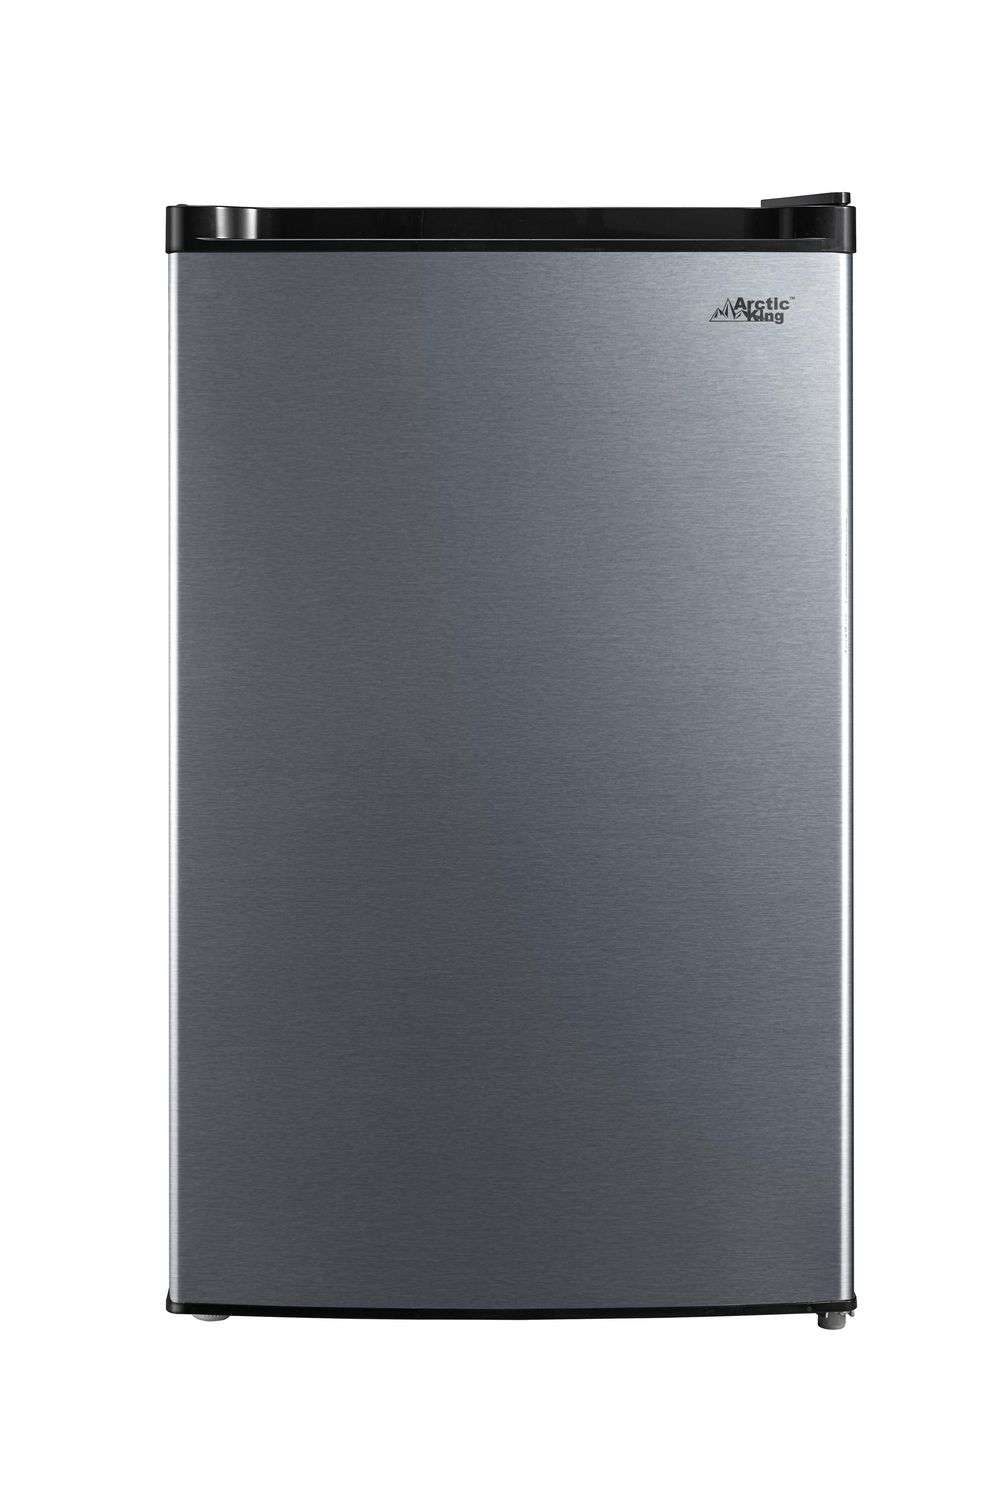 Réfrigérateur compact Arctic King, 4,4 pi³, porte simple, acier inoxydable, E-star